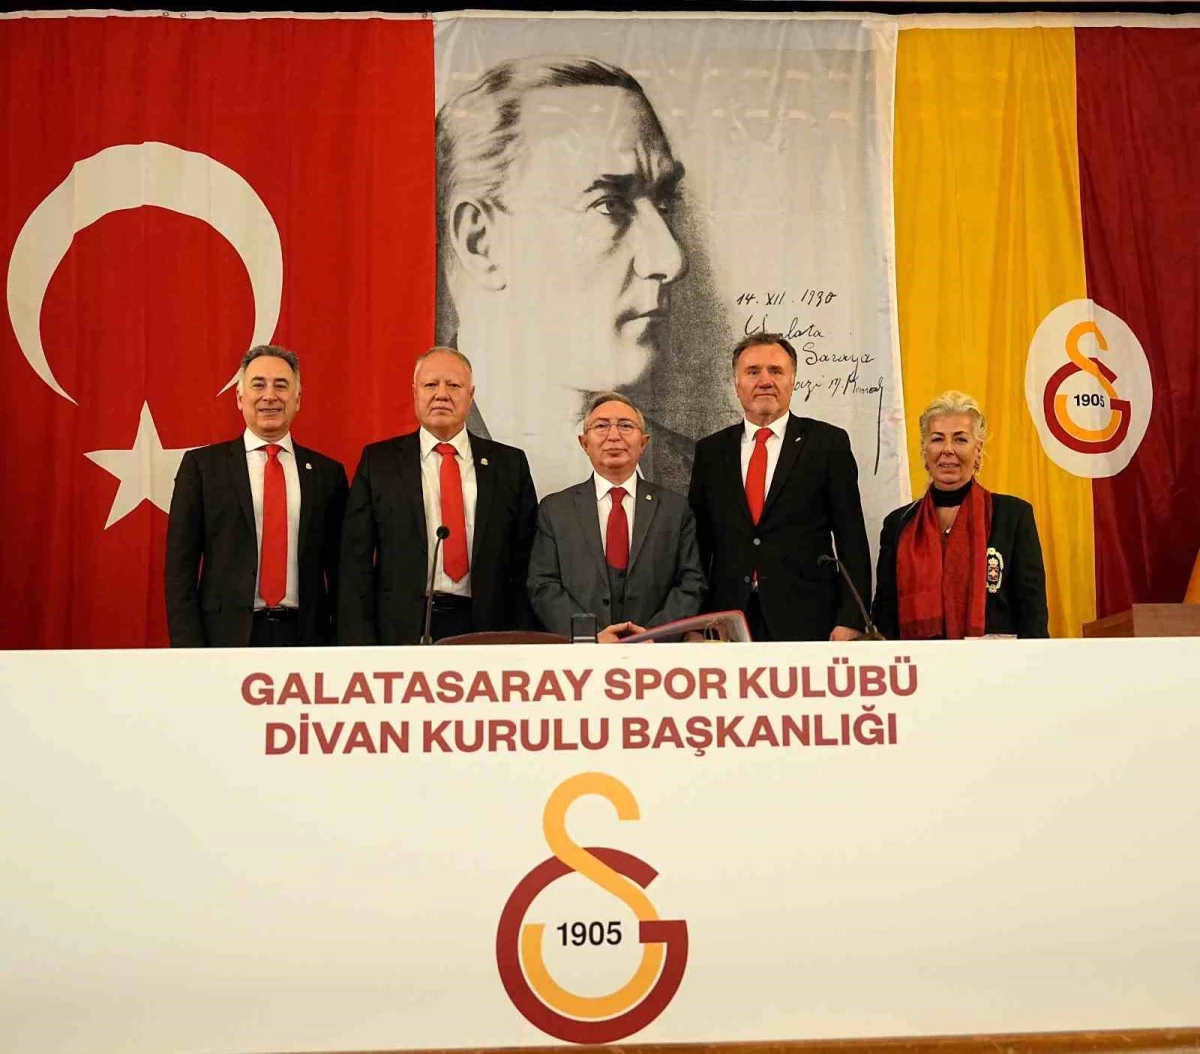 Galatasaray Spor Kulübü Divan Kurulu Başkanı Aykutalp Derkan, yeniden seçildi